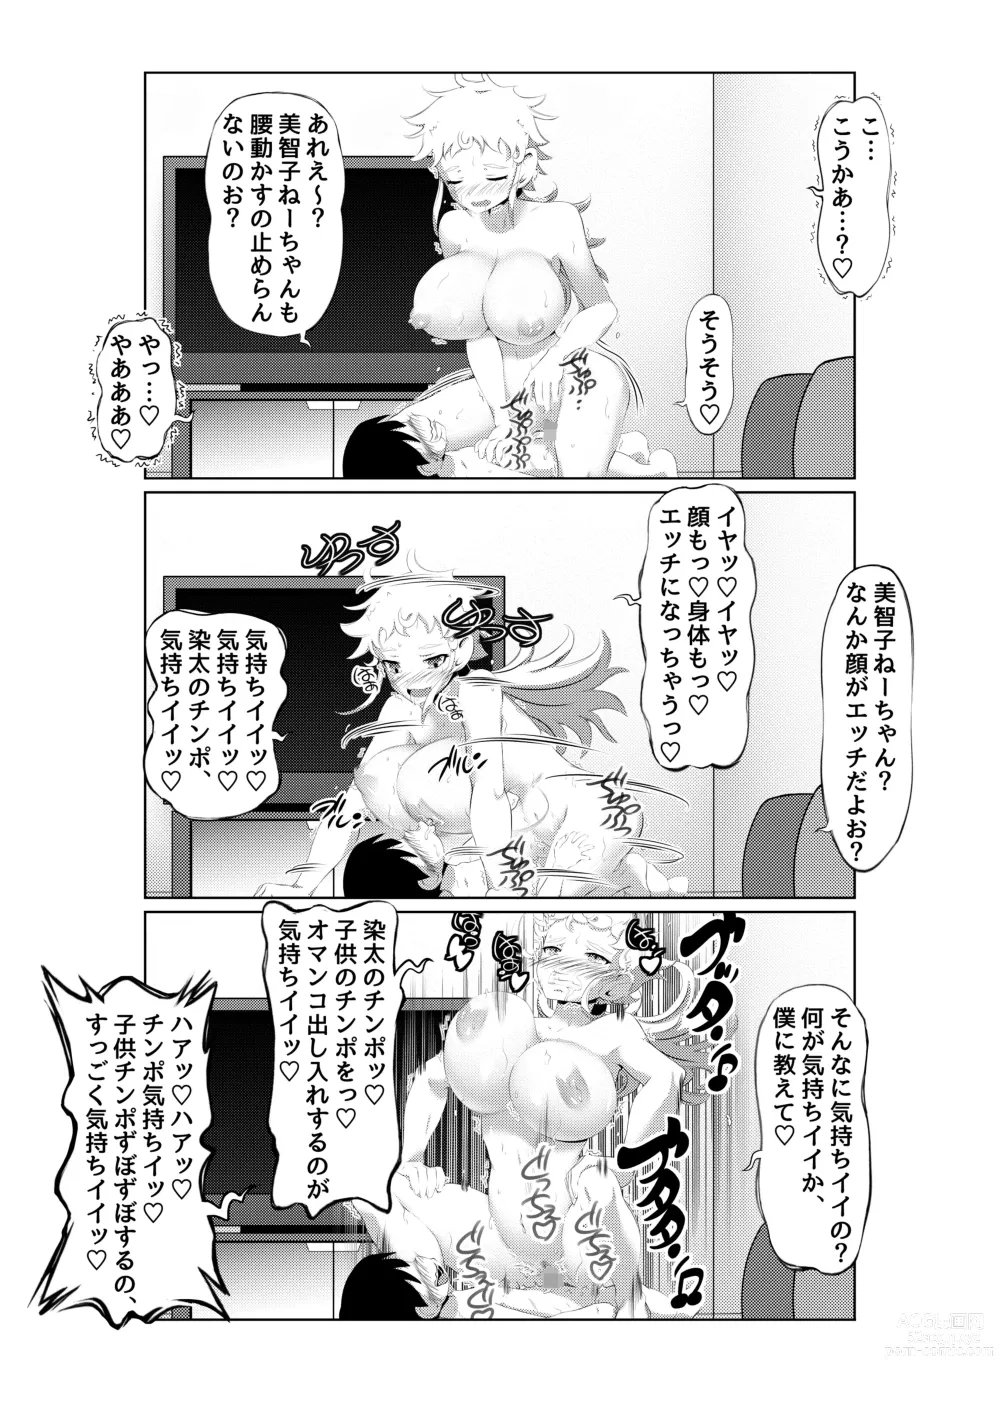 Page 18 of doujinshi Ecchi na Onna Mangakka Combi 2 Rensai Junbi wa Kitsui no da!